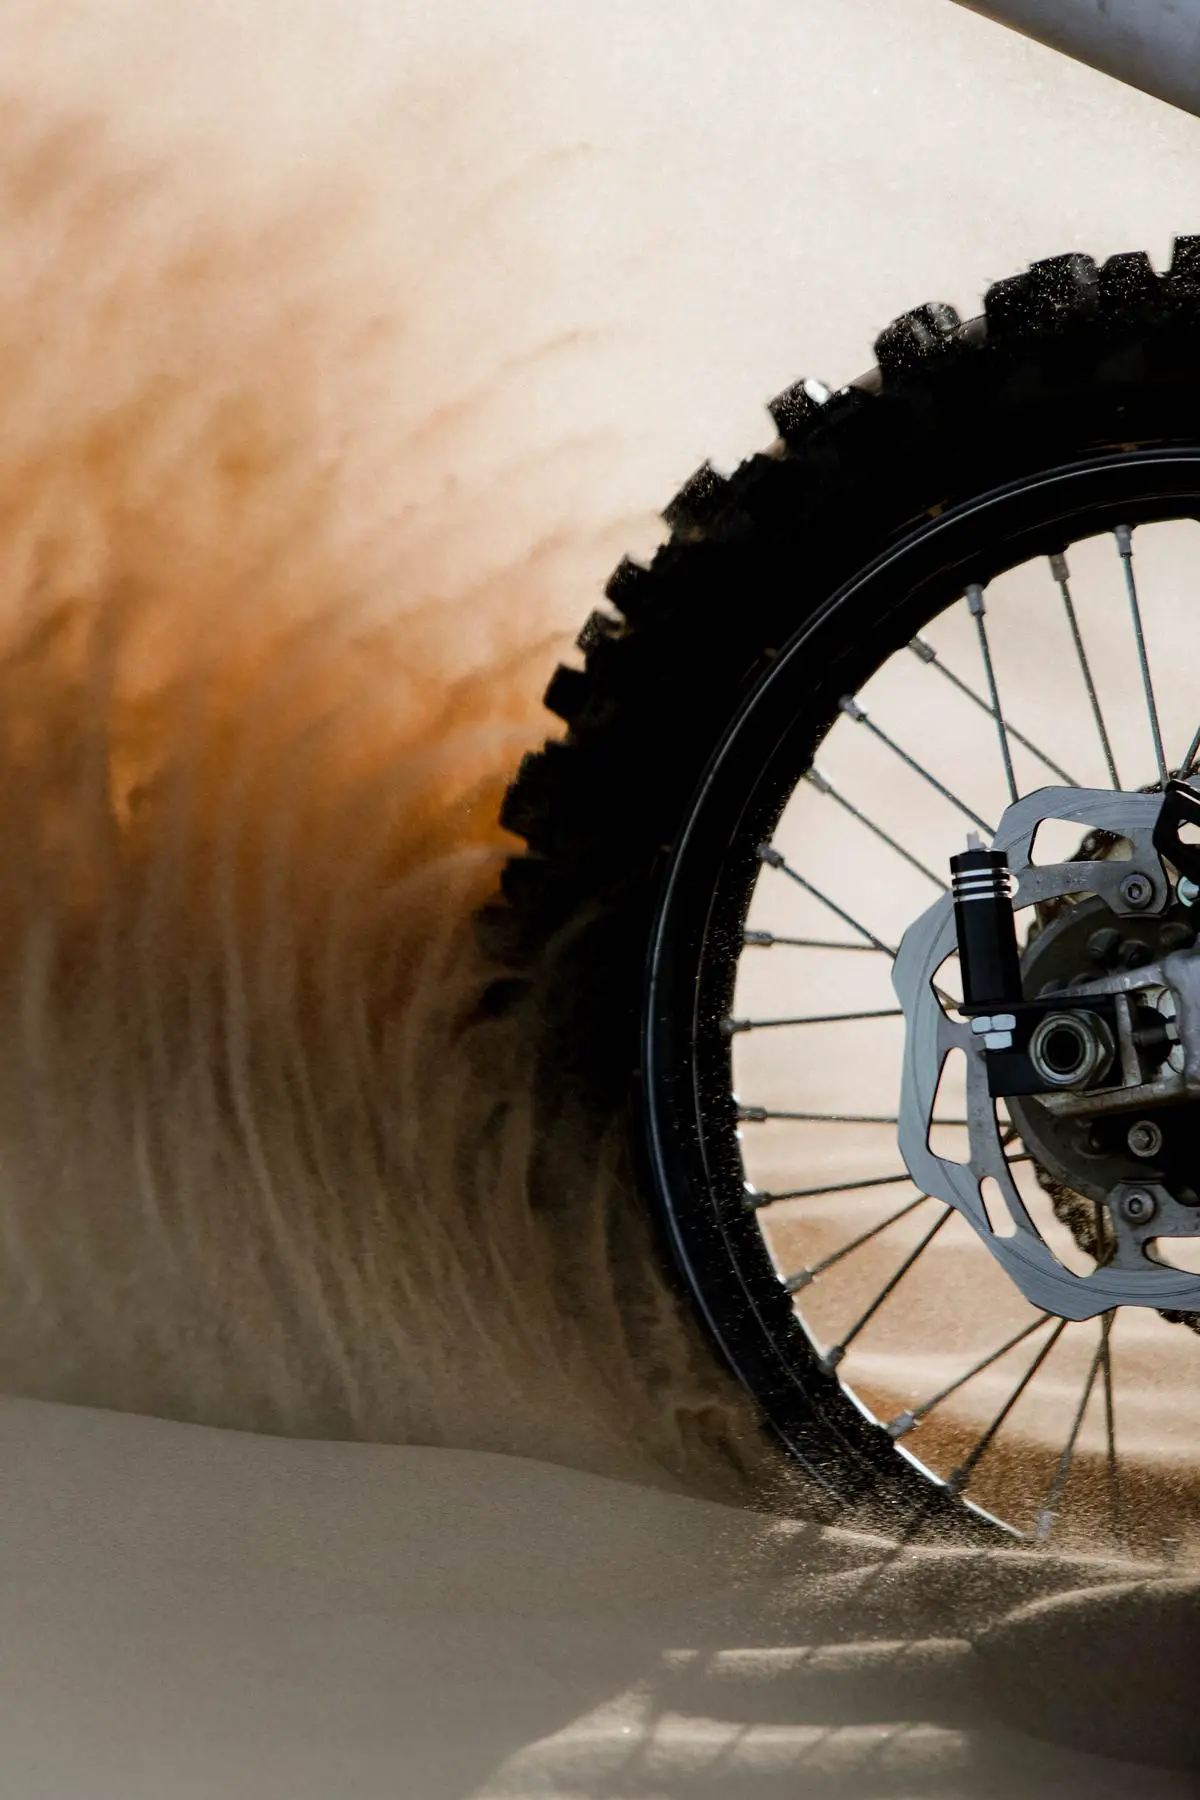 An image of a dirt bike riding through rough terrains